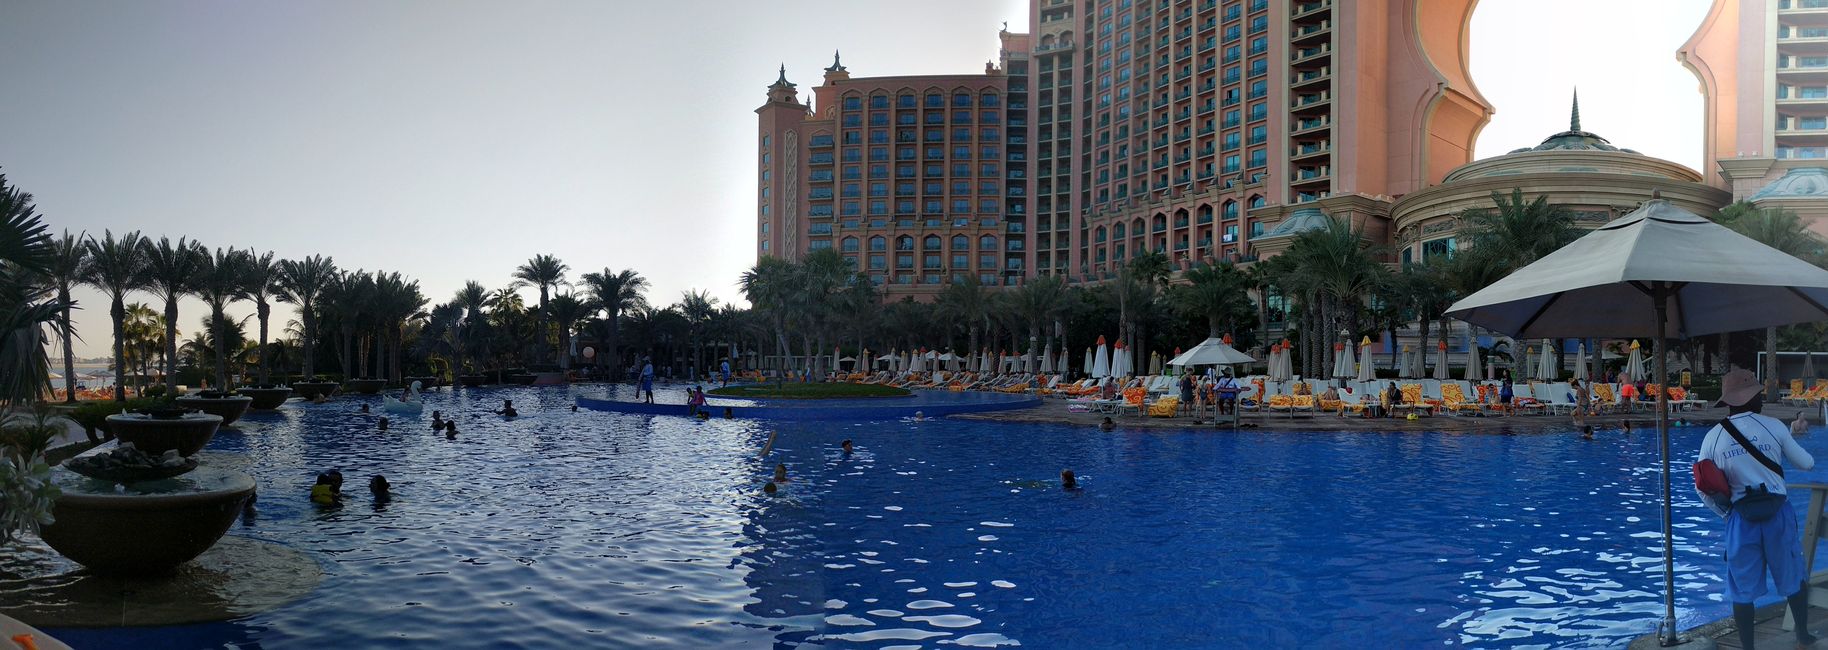 Atlantis the Palm - Main Pool